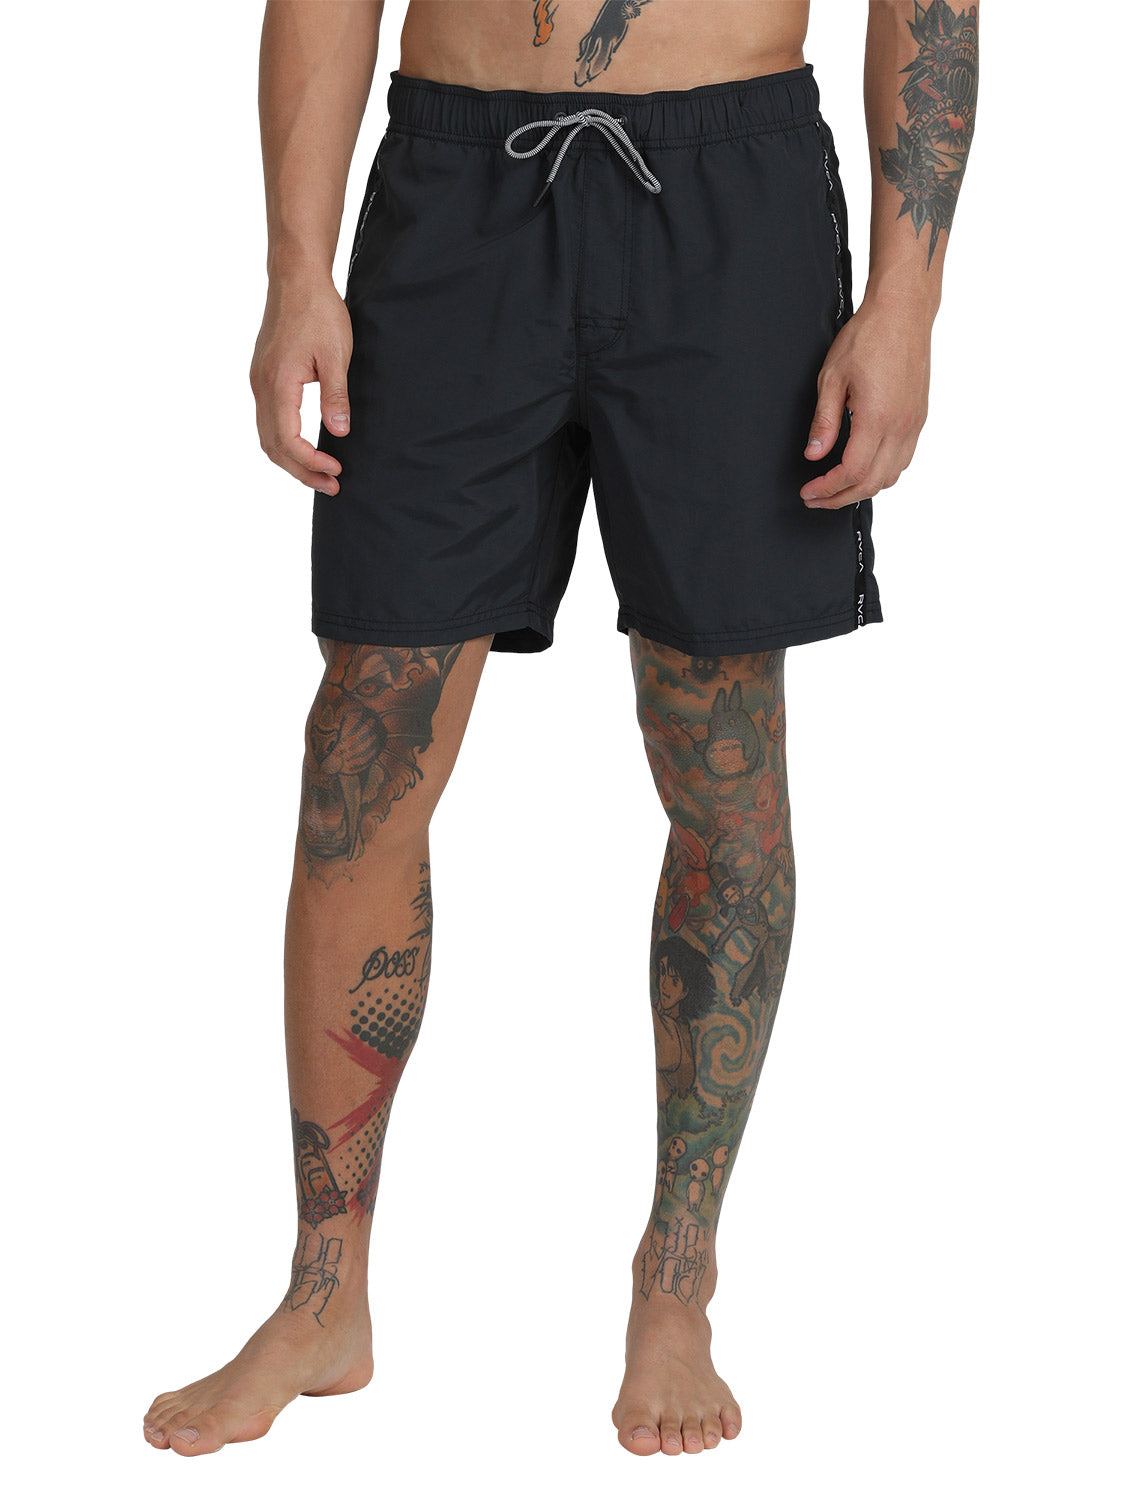 RVCA Men's VA Standard Issue 17" Elastic Shorts